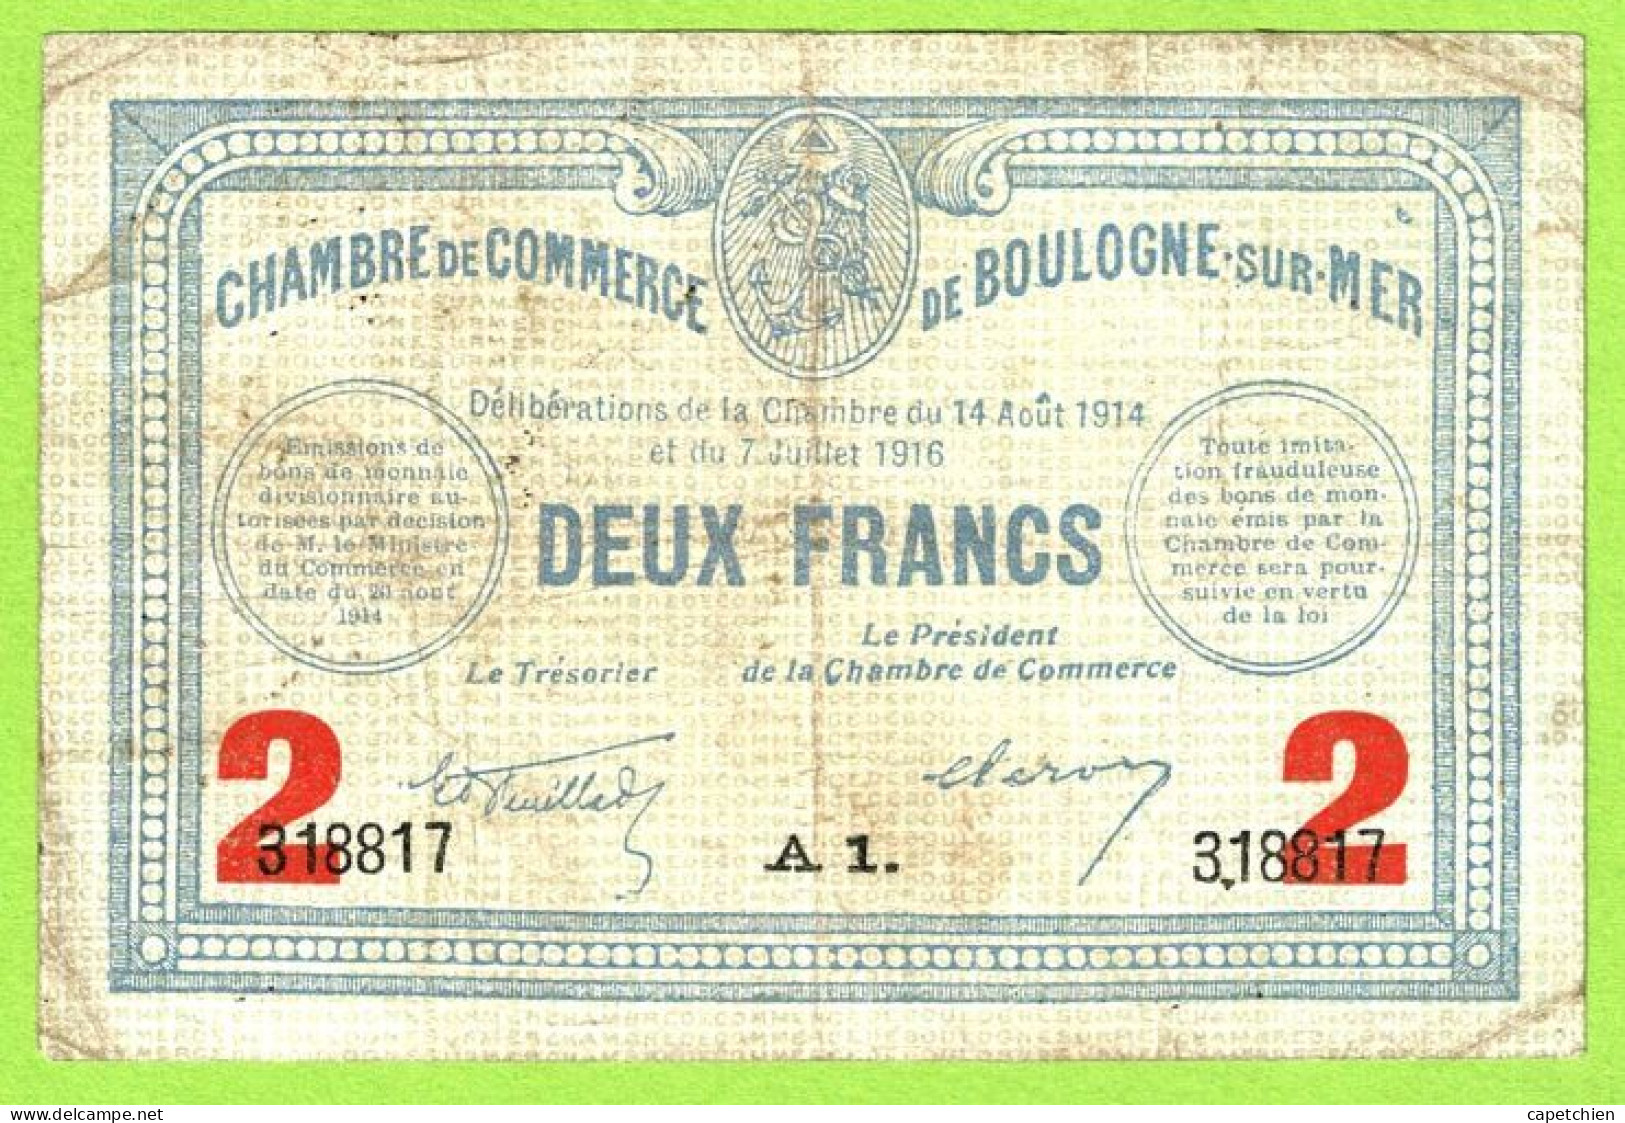 FRANCE / CHAMBRE De COMMERCE : BOULOGNE SUR MER / 2 FRANCS / 14 AOUT 1914 - 7 JUILLET 1916  / N° 318817 / SERIE A1 - Handelskammer